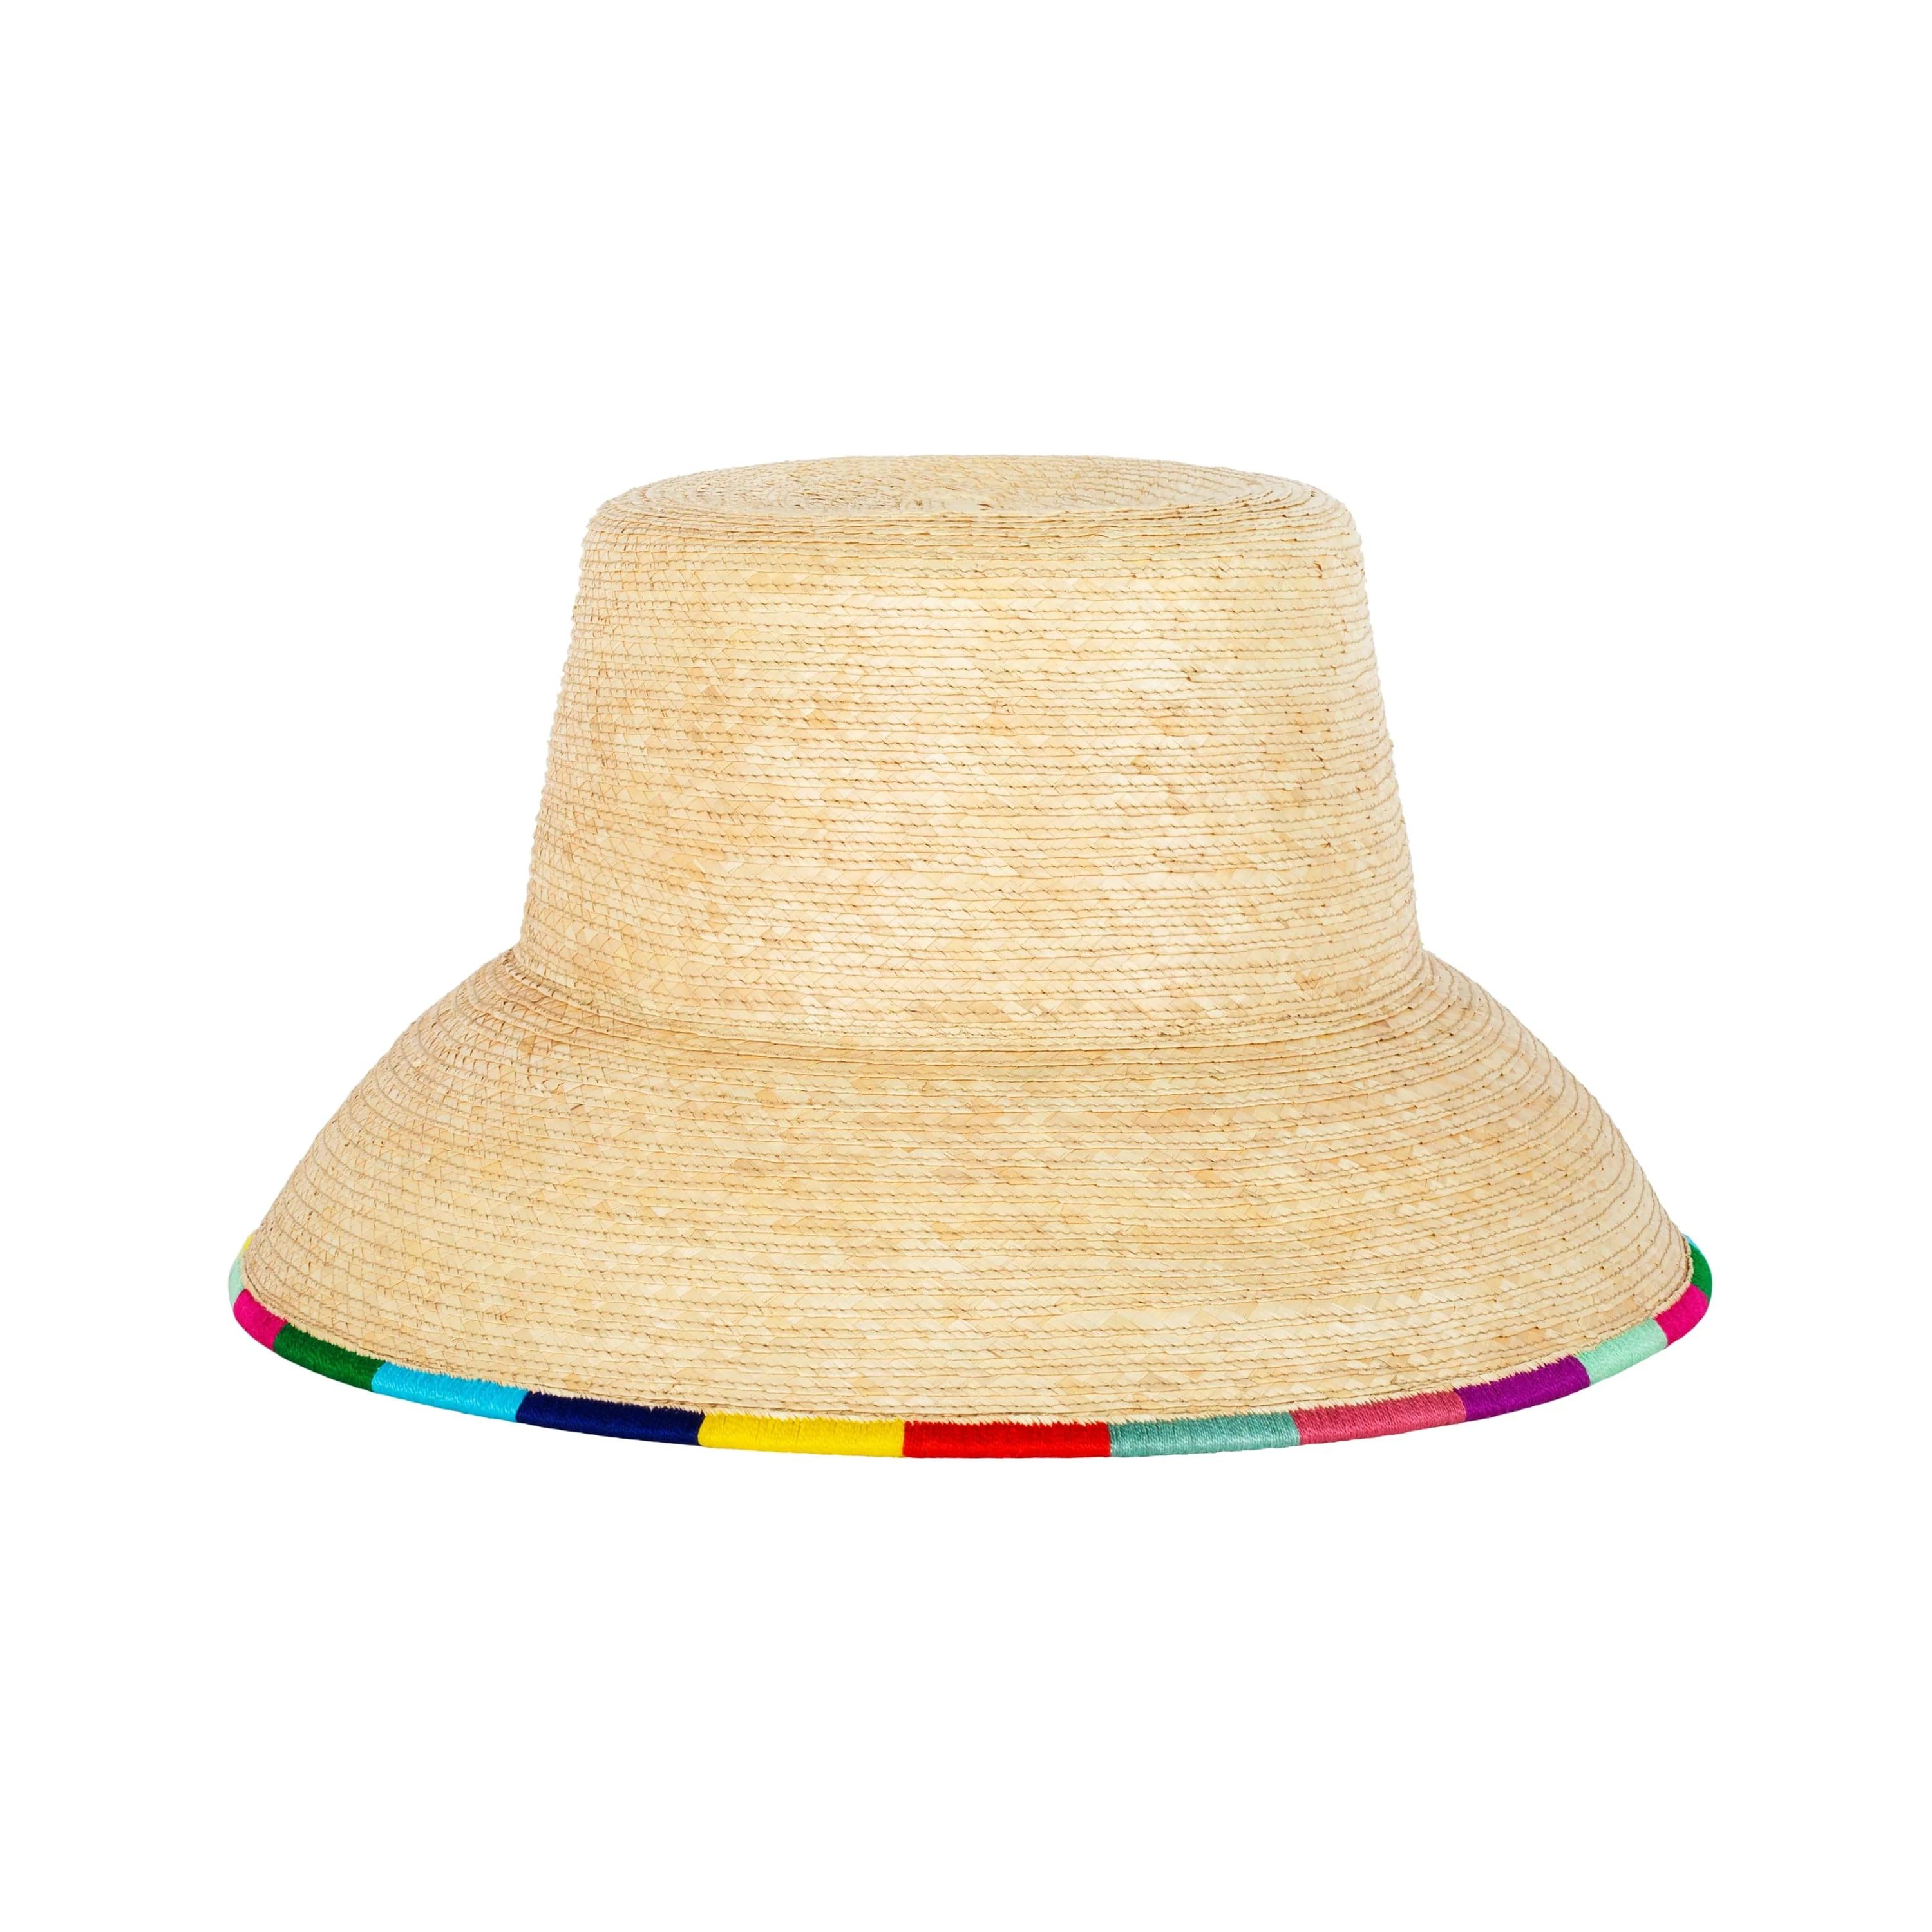 Erica Palm Bucket Hat | Sunshine Tienda